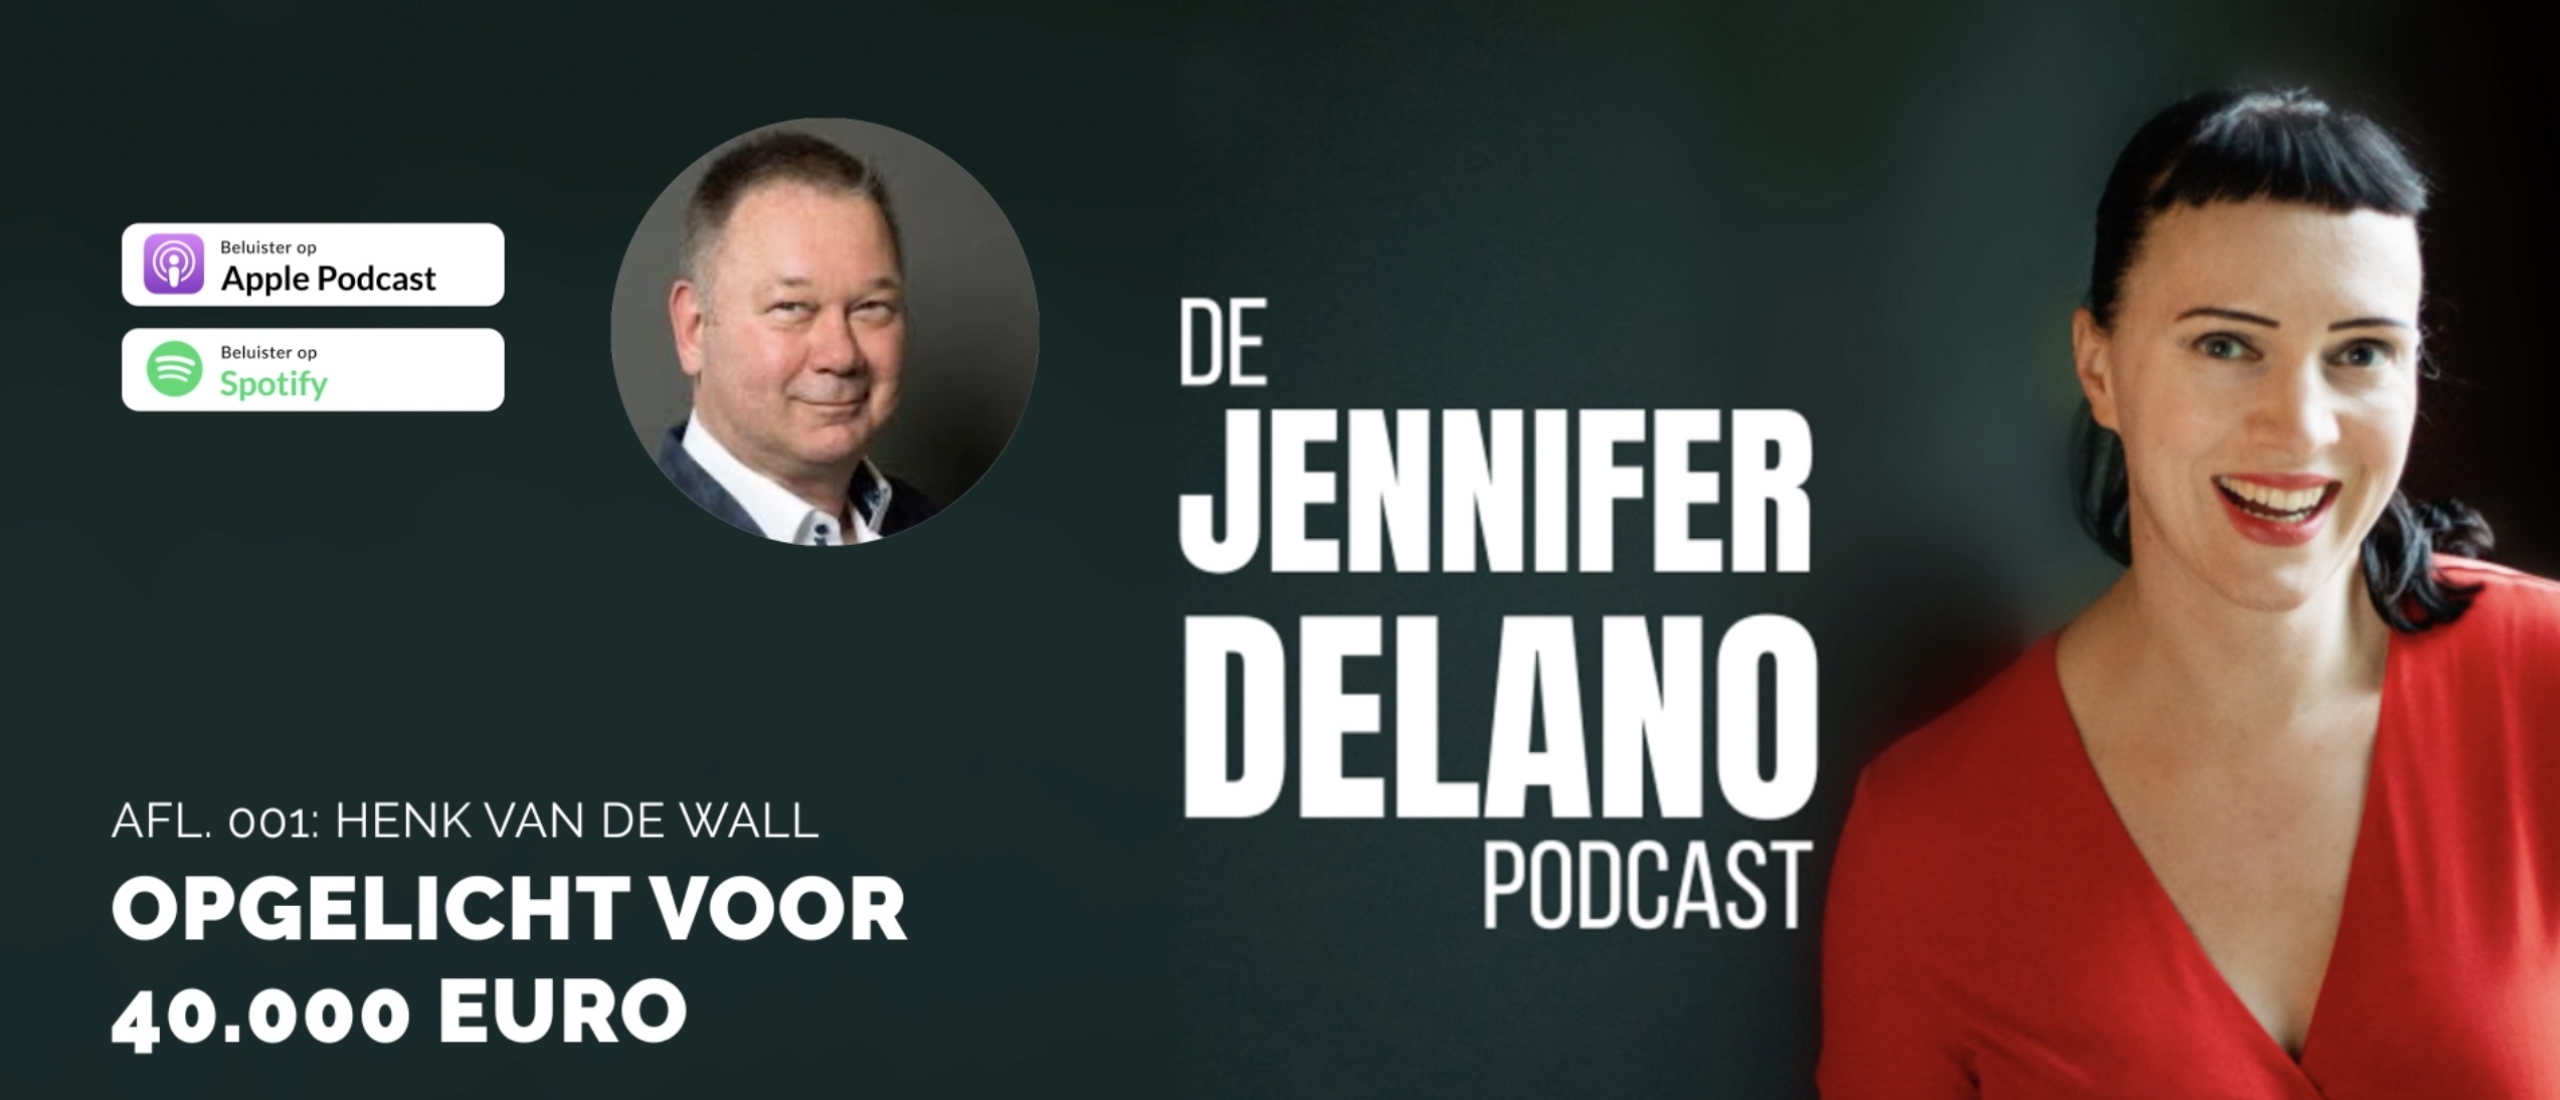 Opgelicht voor 40.000 euro - De Jennifer Delano Podcast Afl. 001 met Henk van de Wall